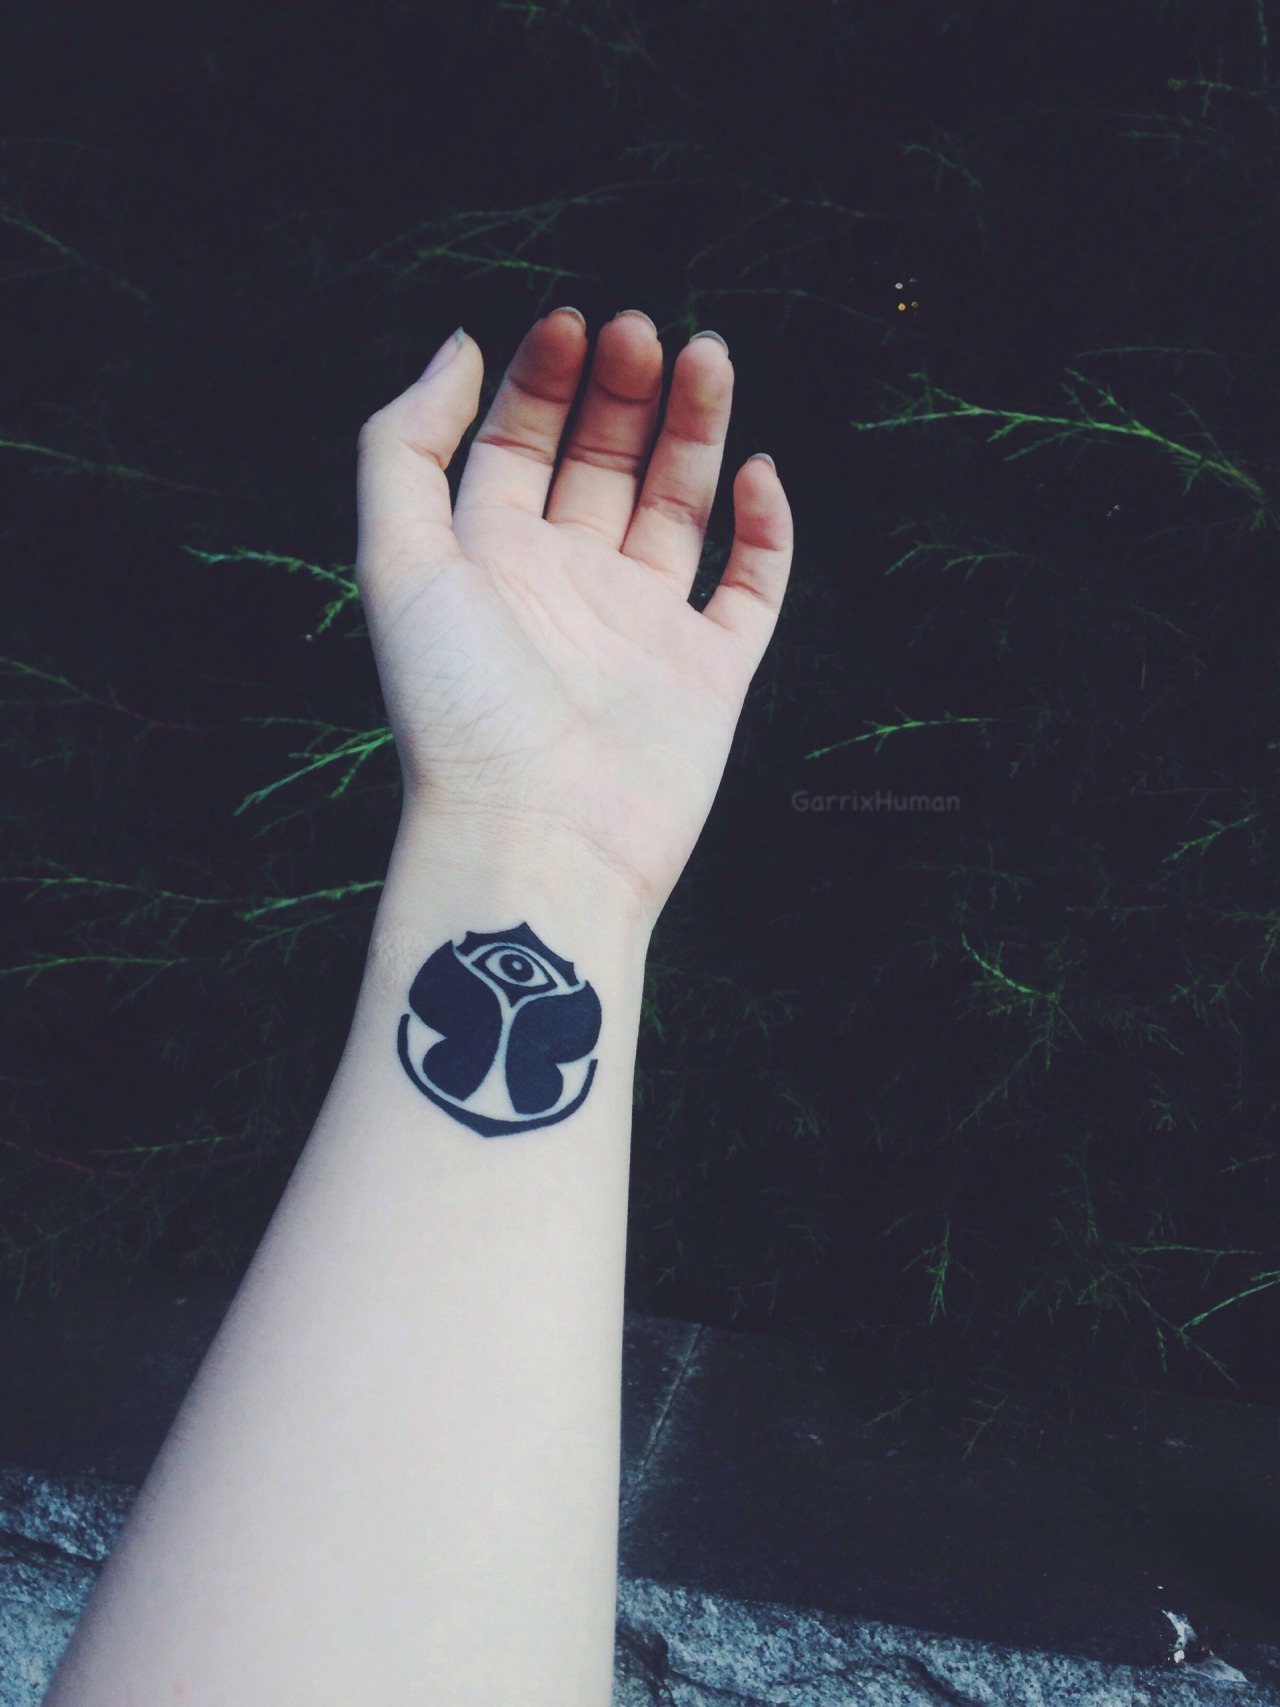 Garrix Human — my tml tattoo